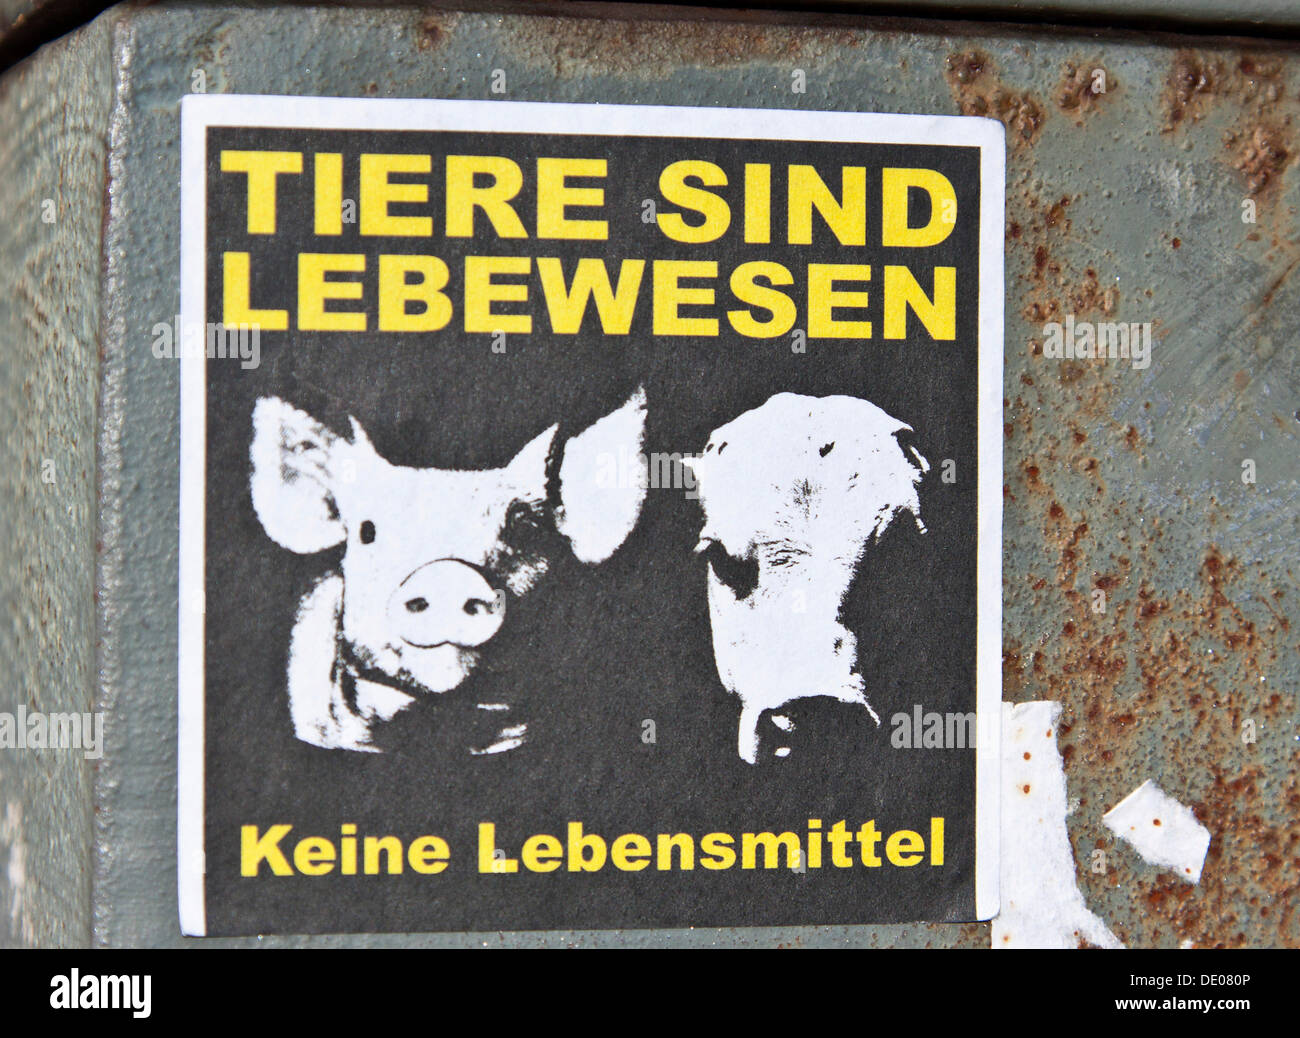 Aufkleber "Tiere Sind Lebewesen - Keine Lebensmittel", Deutsch für "Tiere sind Lebewesen nicht essen", Berlin Stockfoto